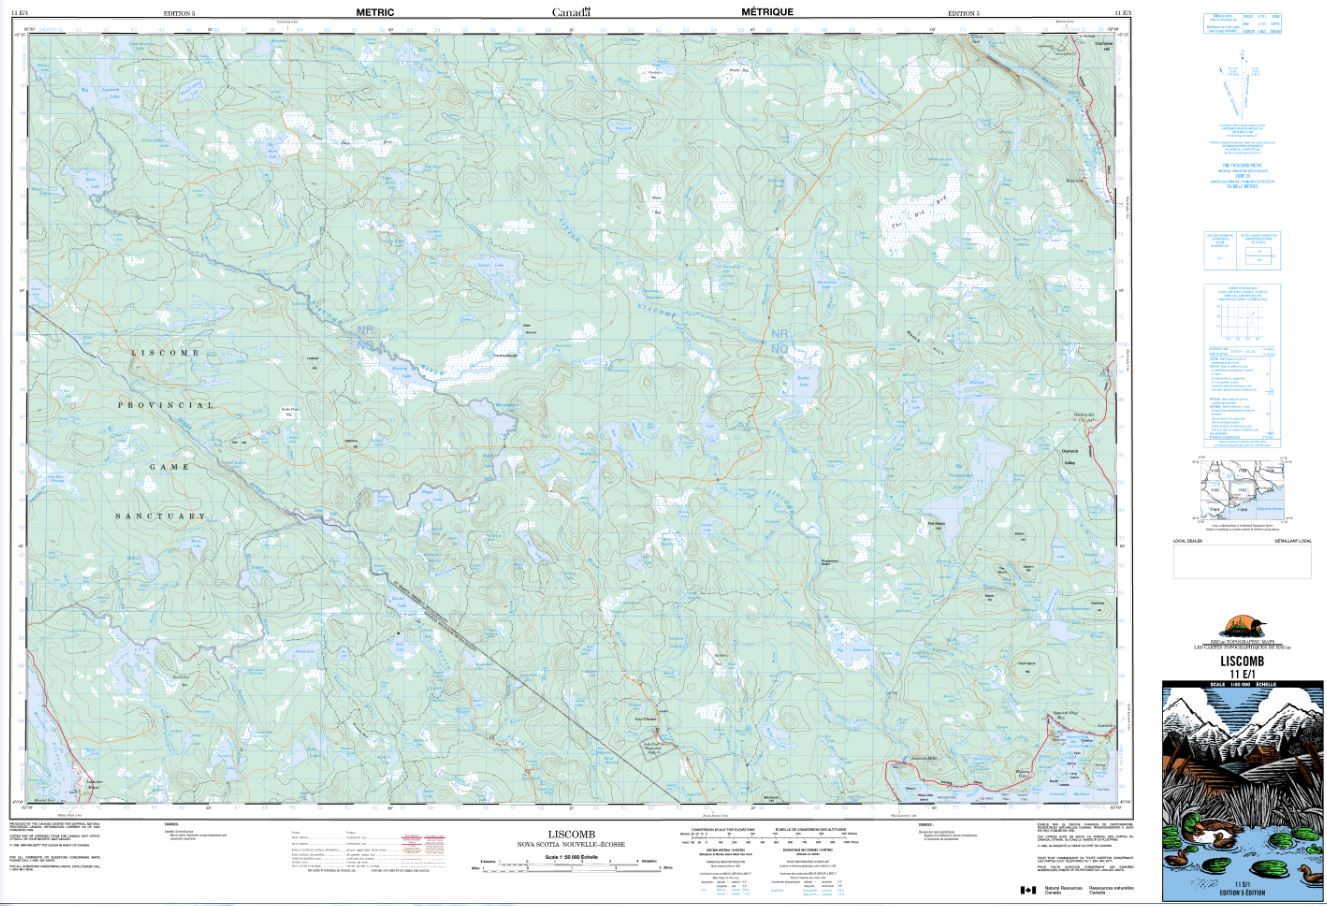 11E/01 Liscomb Topographic Map Nova Scotia